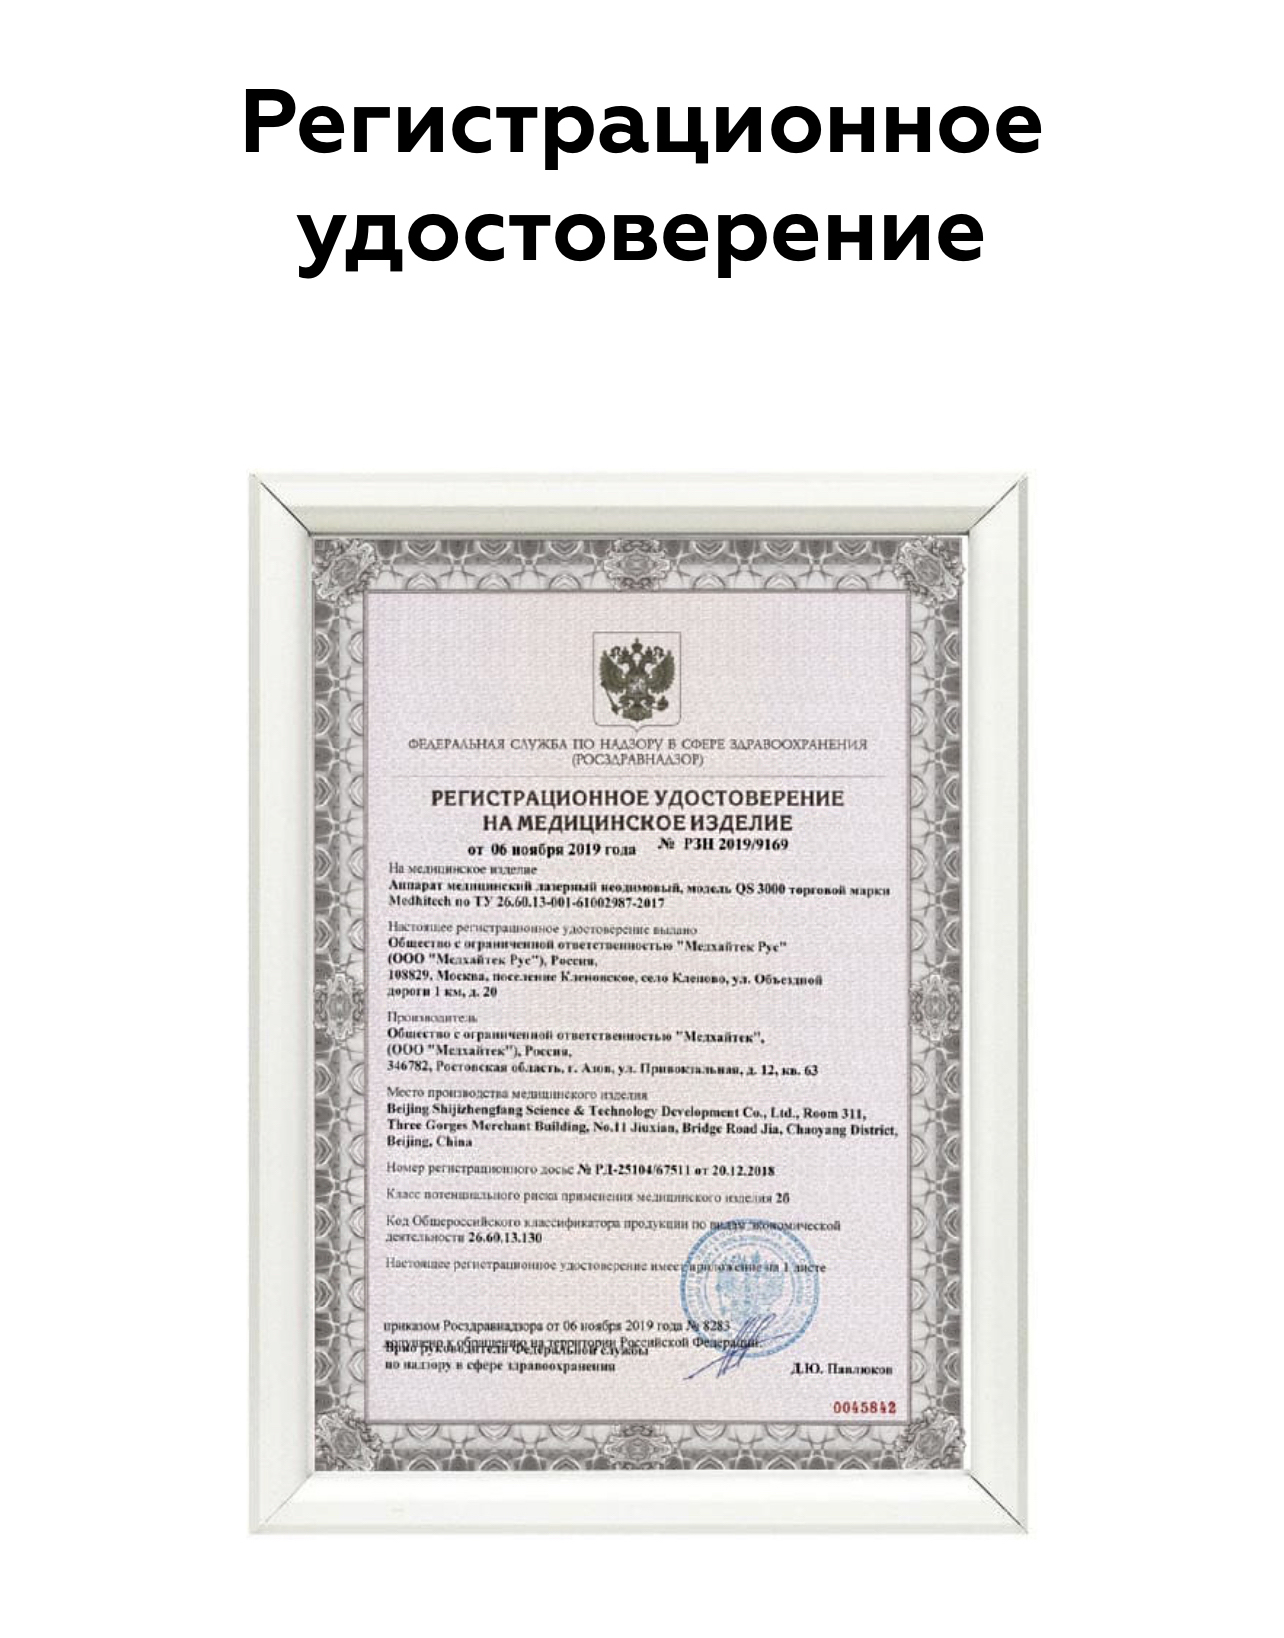 Roszdravnadzor ru licenses